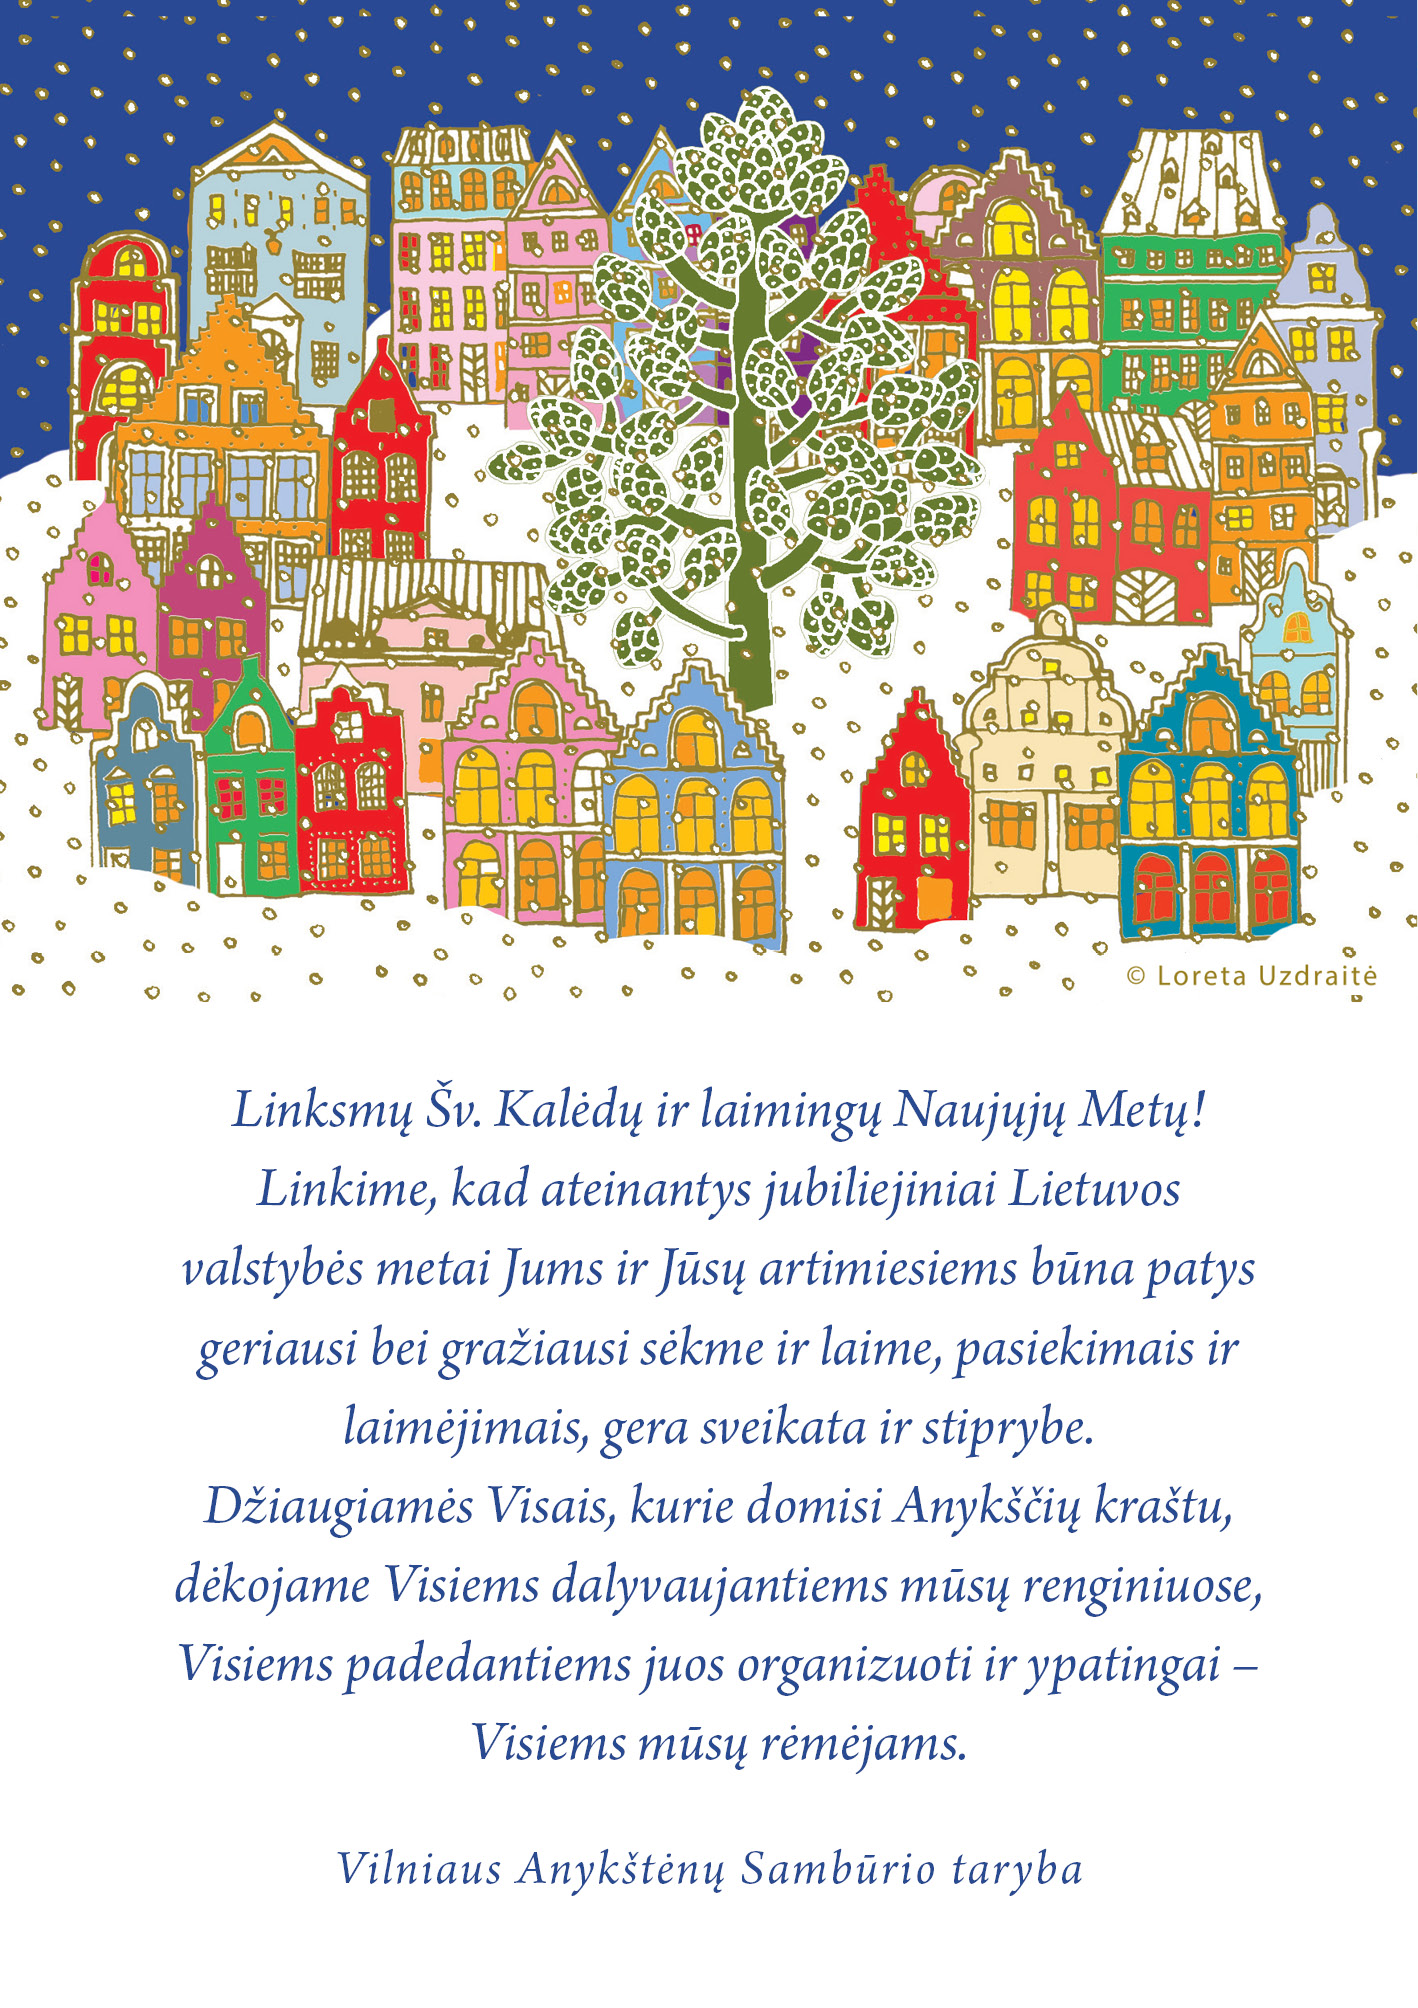 Vilniaus Anykštėnų Sambūrio tarybos sveikinimas